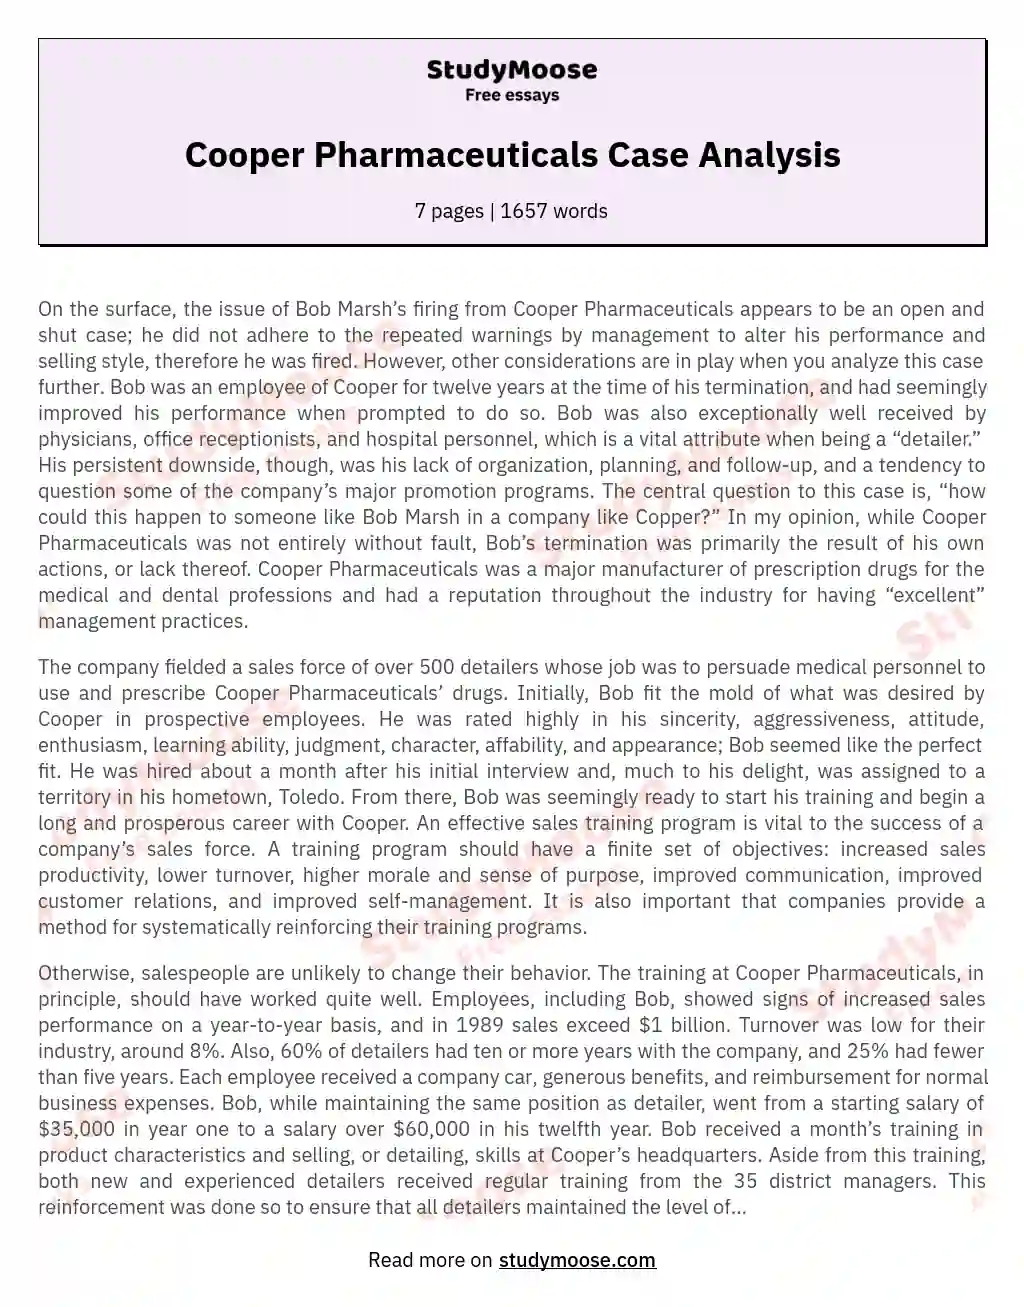 Cooper Pharmaceuticals Case Analysis essay